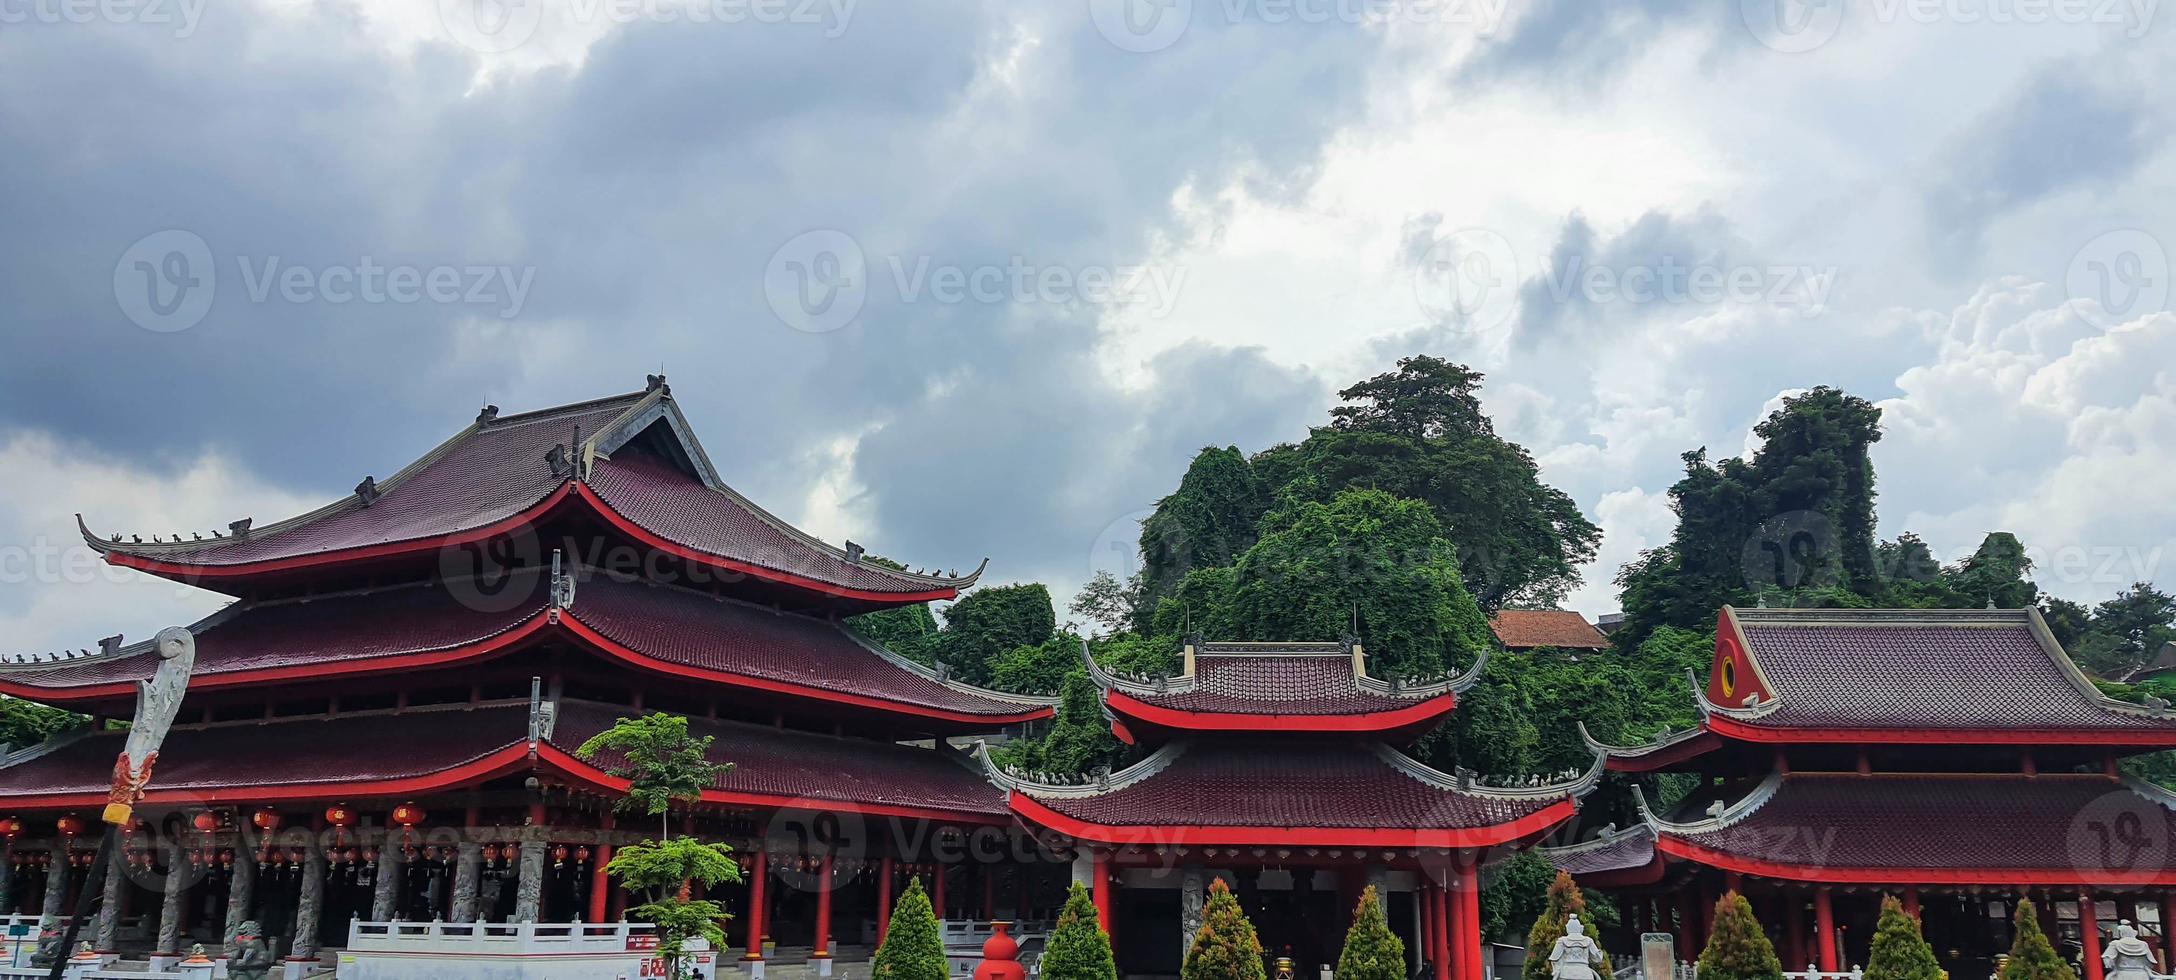 deze is een foto van de dak van de Sam poep Kong tempel in semarang.